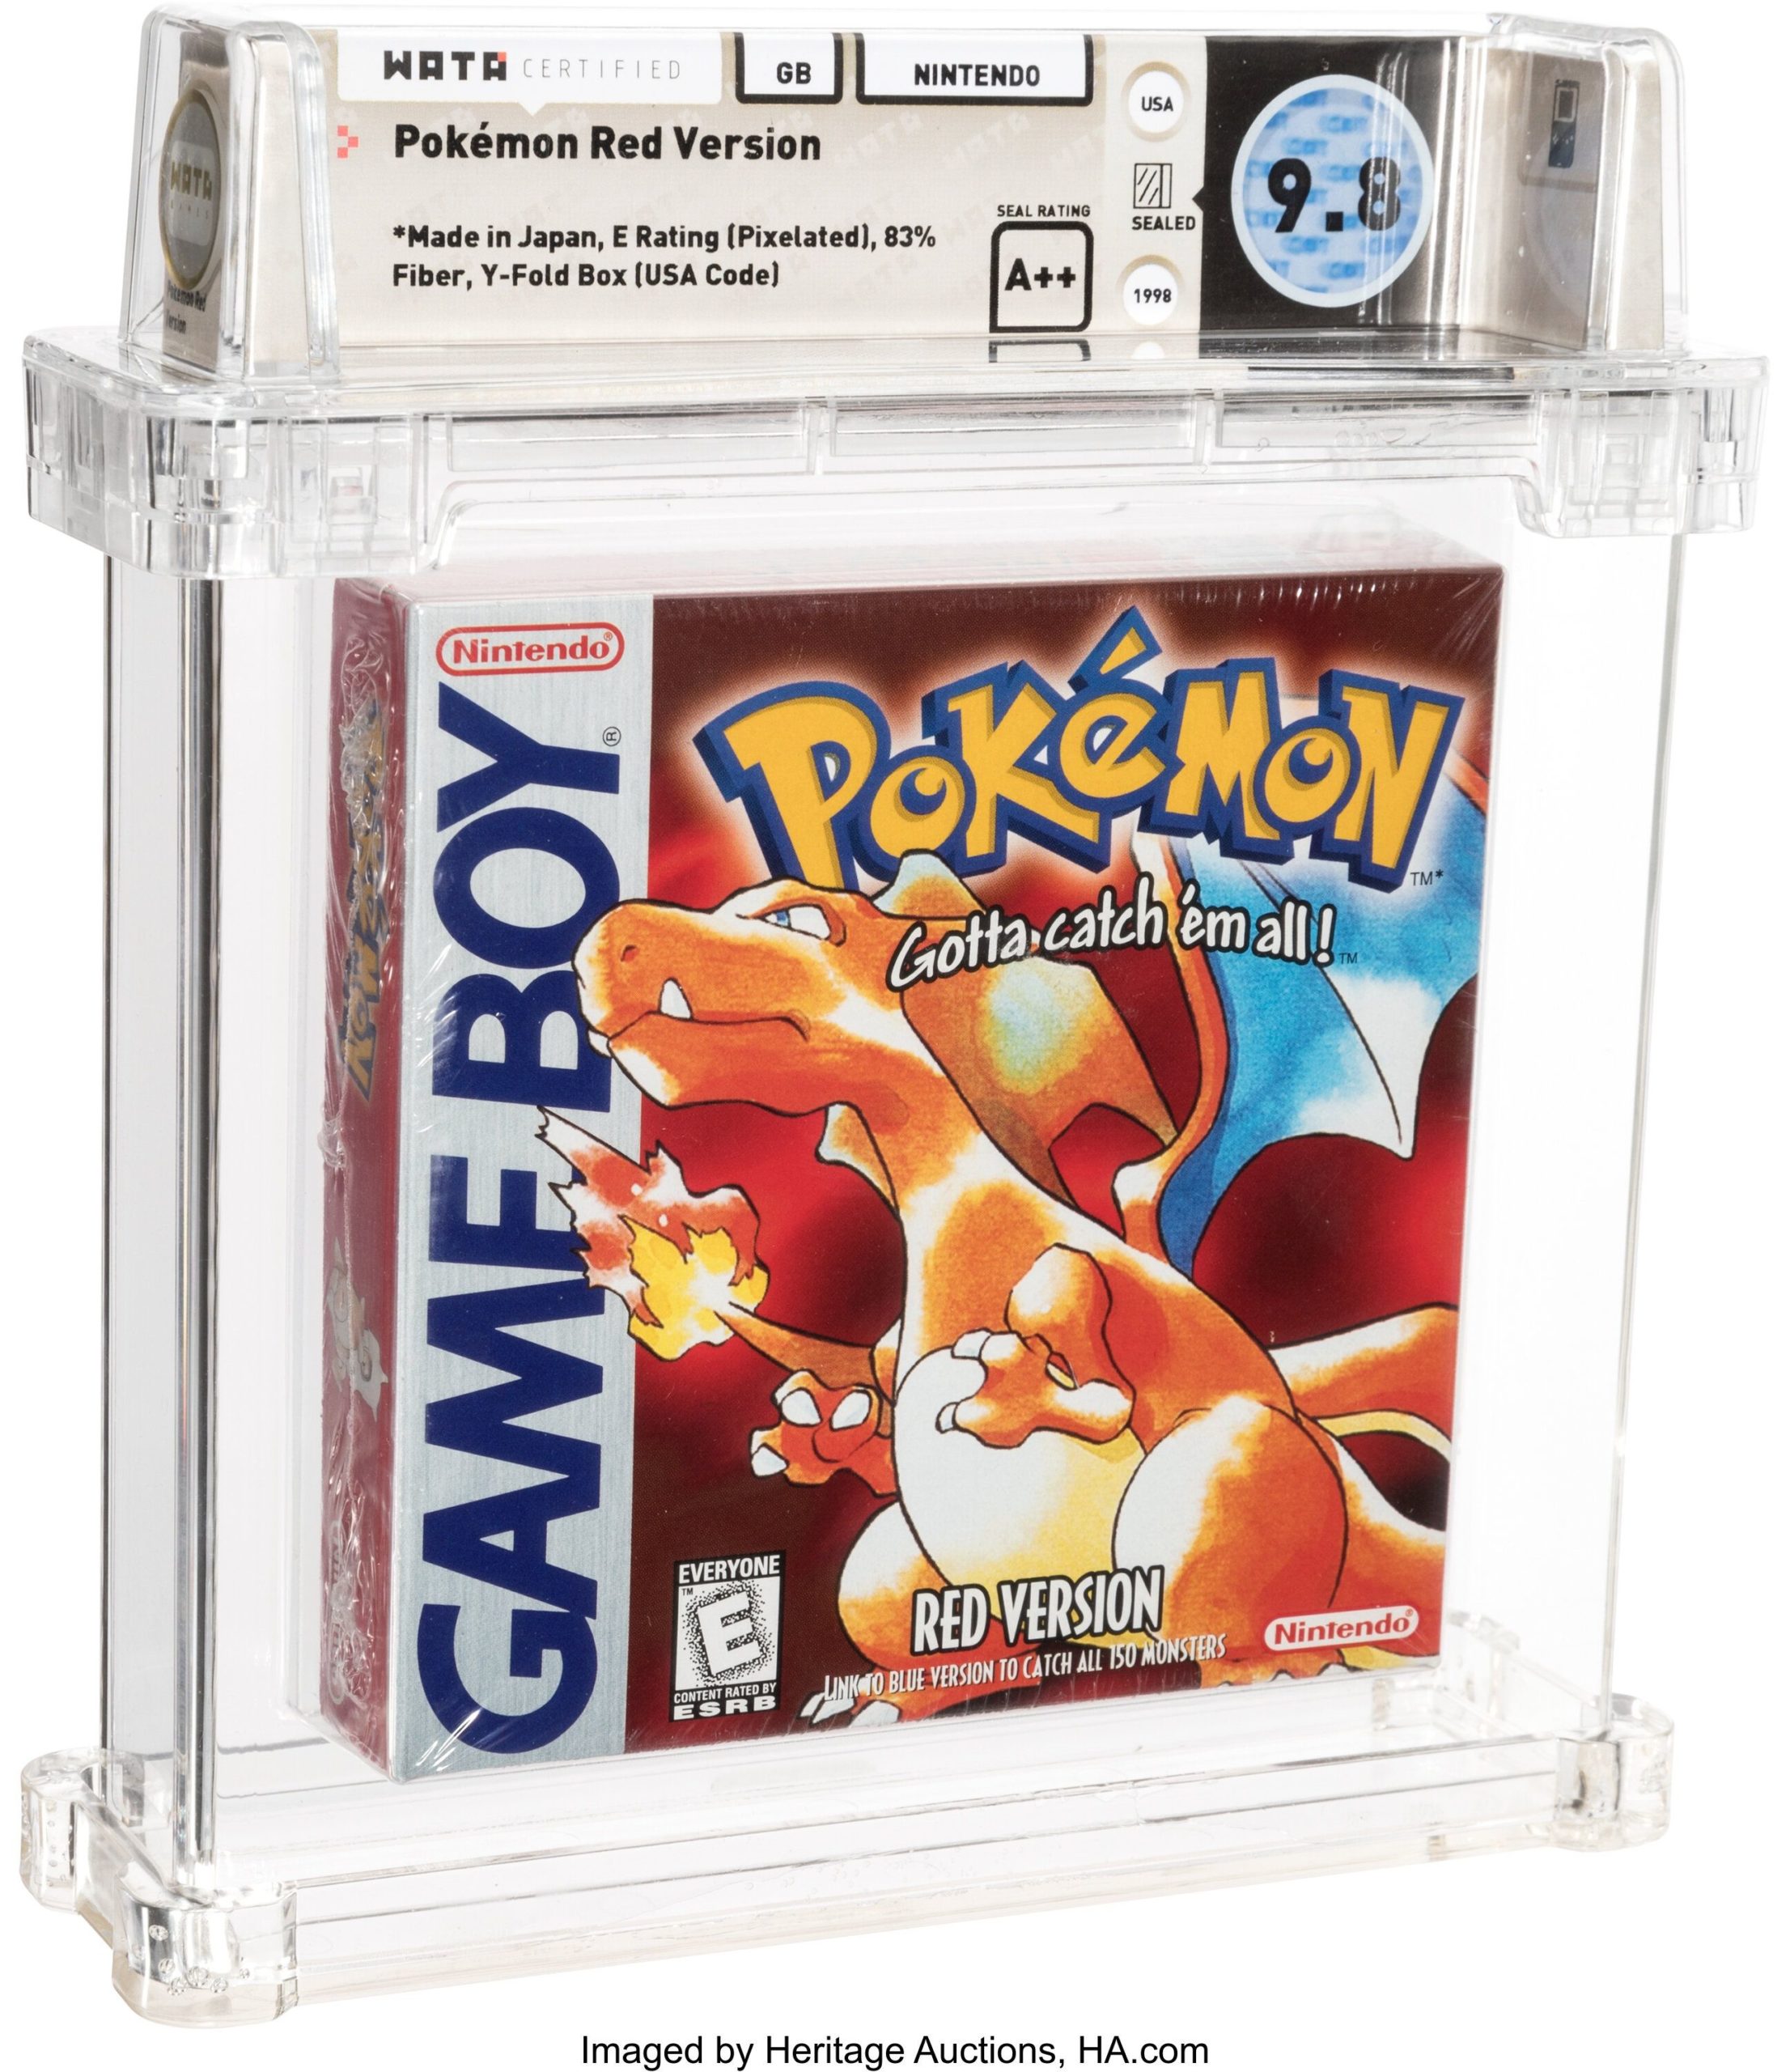 Une copie de Pokemon "Red Version" a battu les records pour un jeu de la franchise avec un montant de 84,000$US